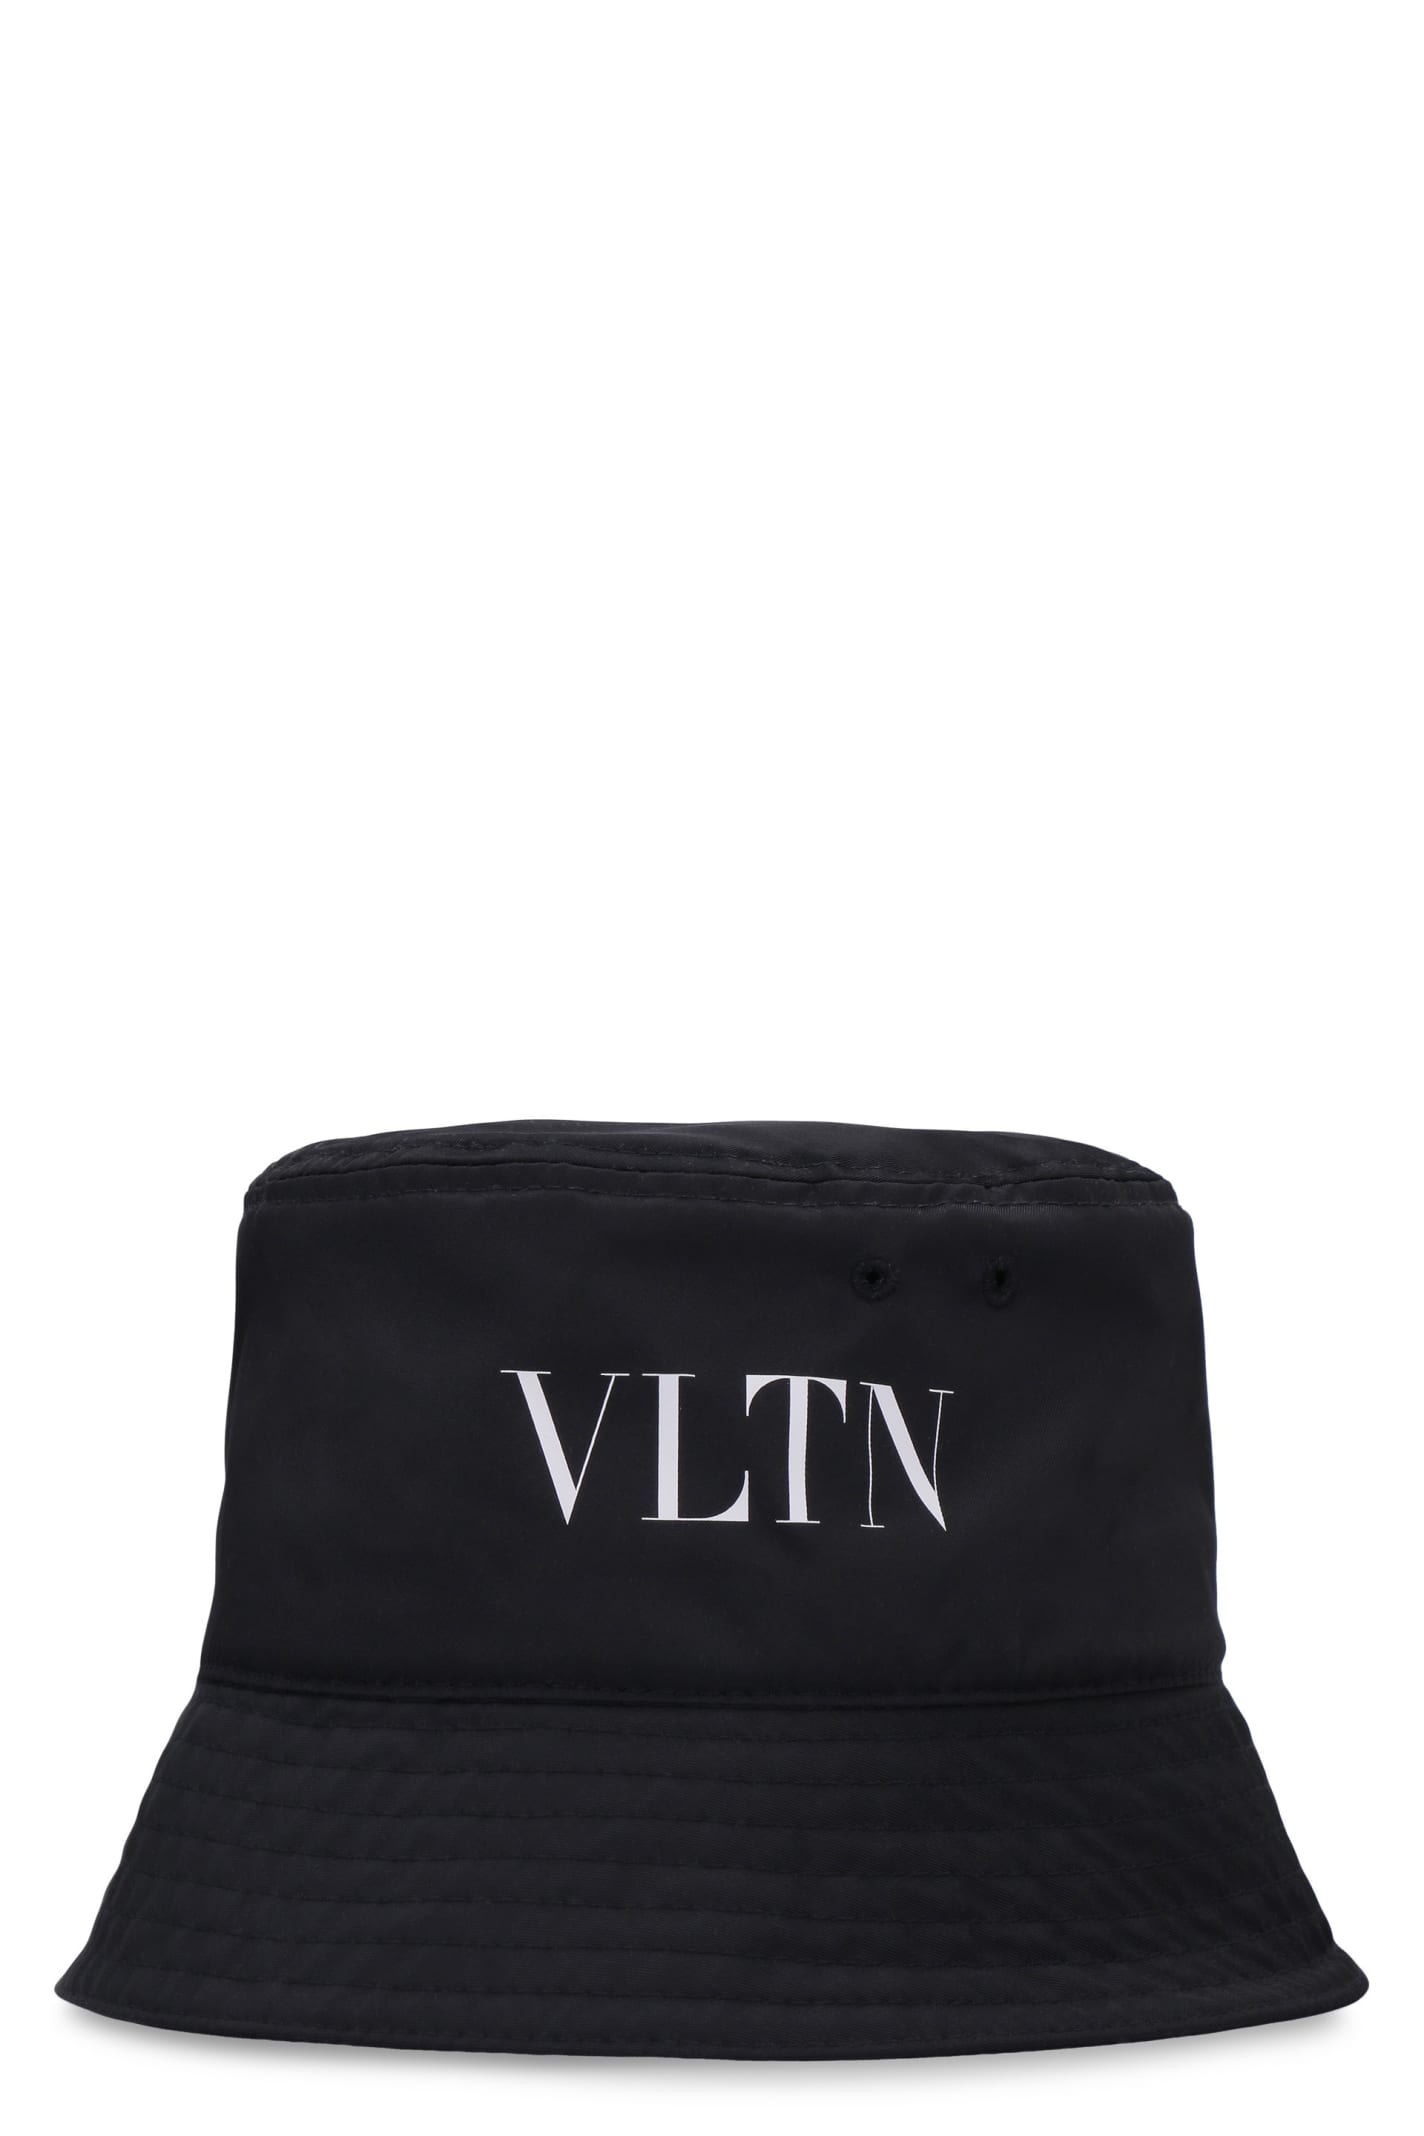 Valentino Garavani VLTN Bucket Hat